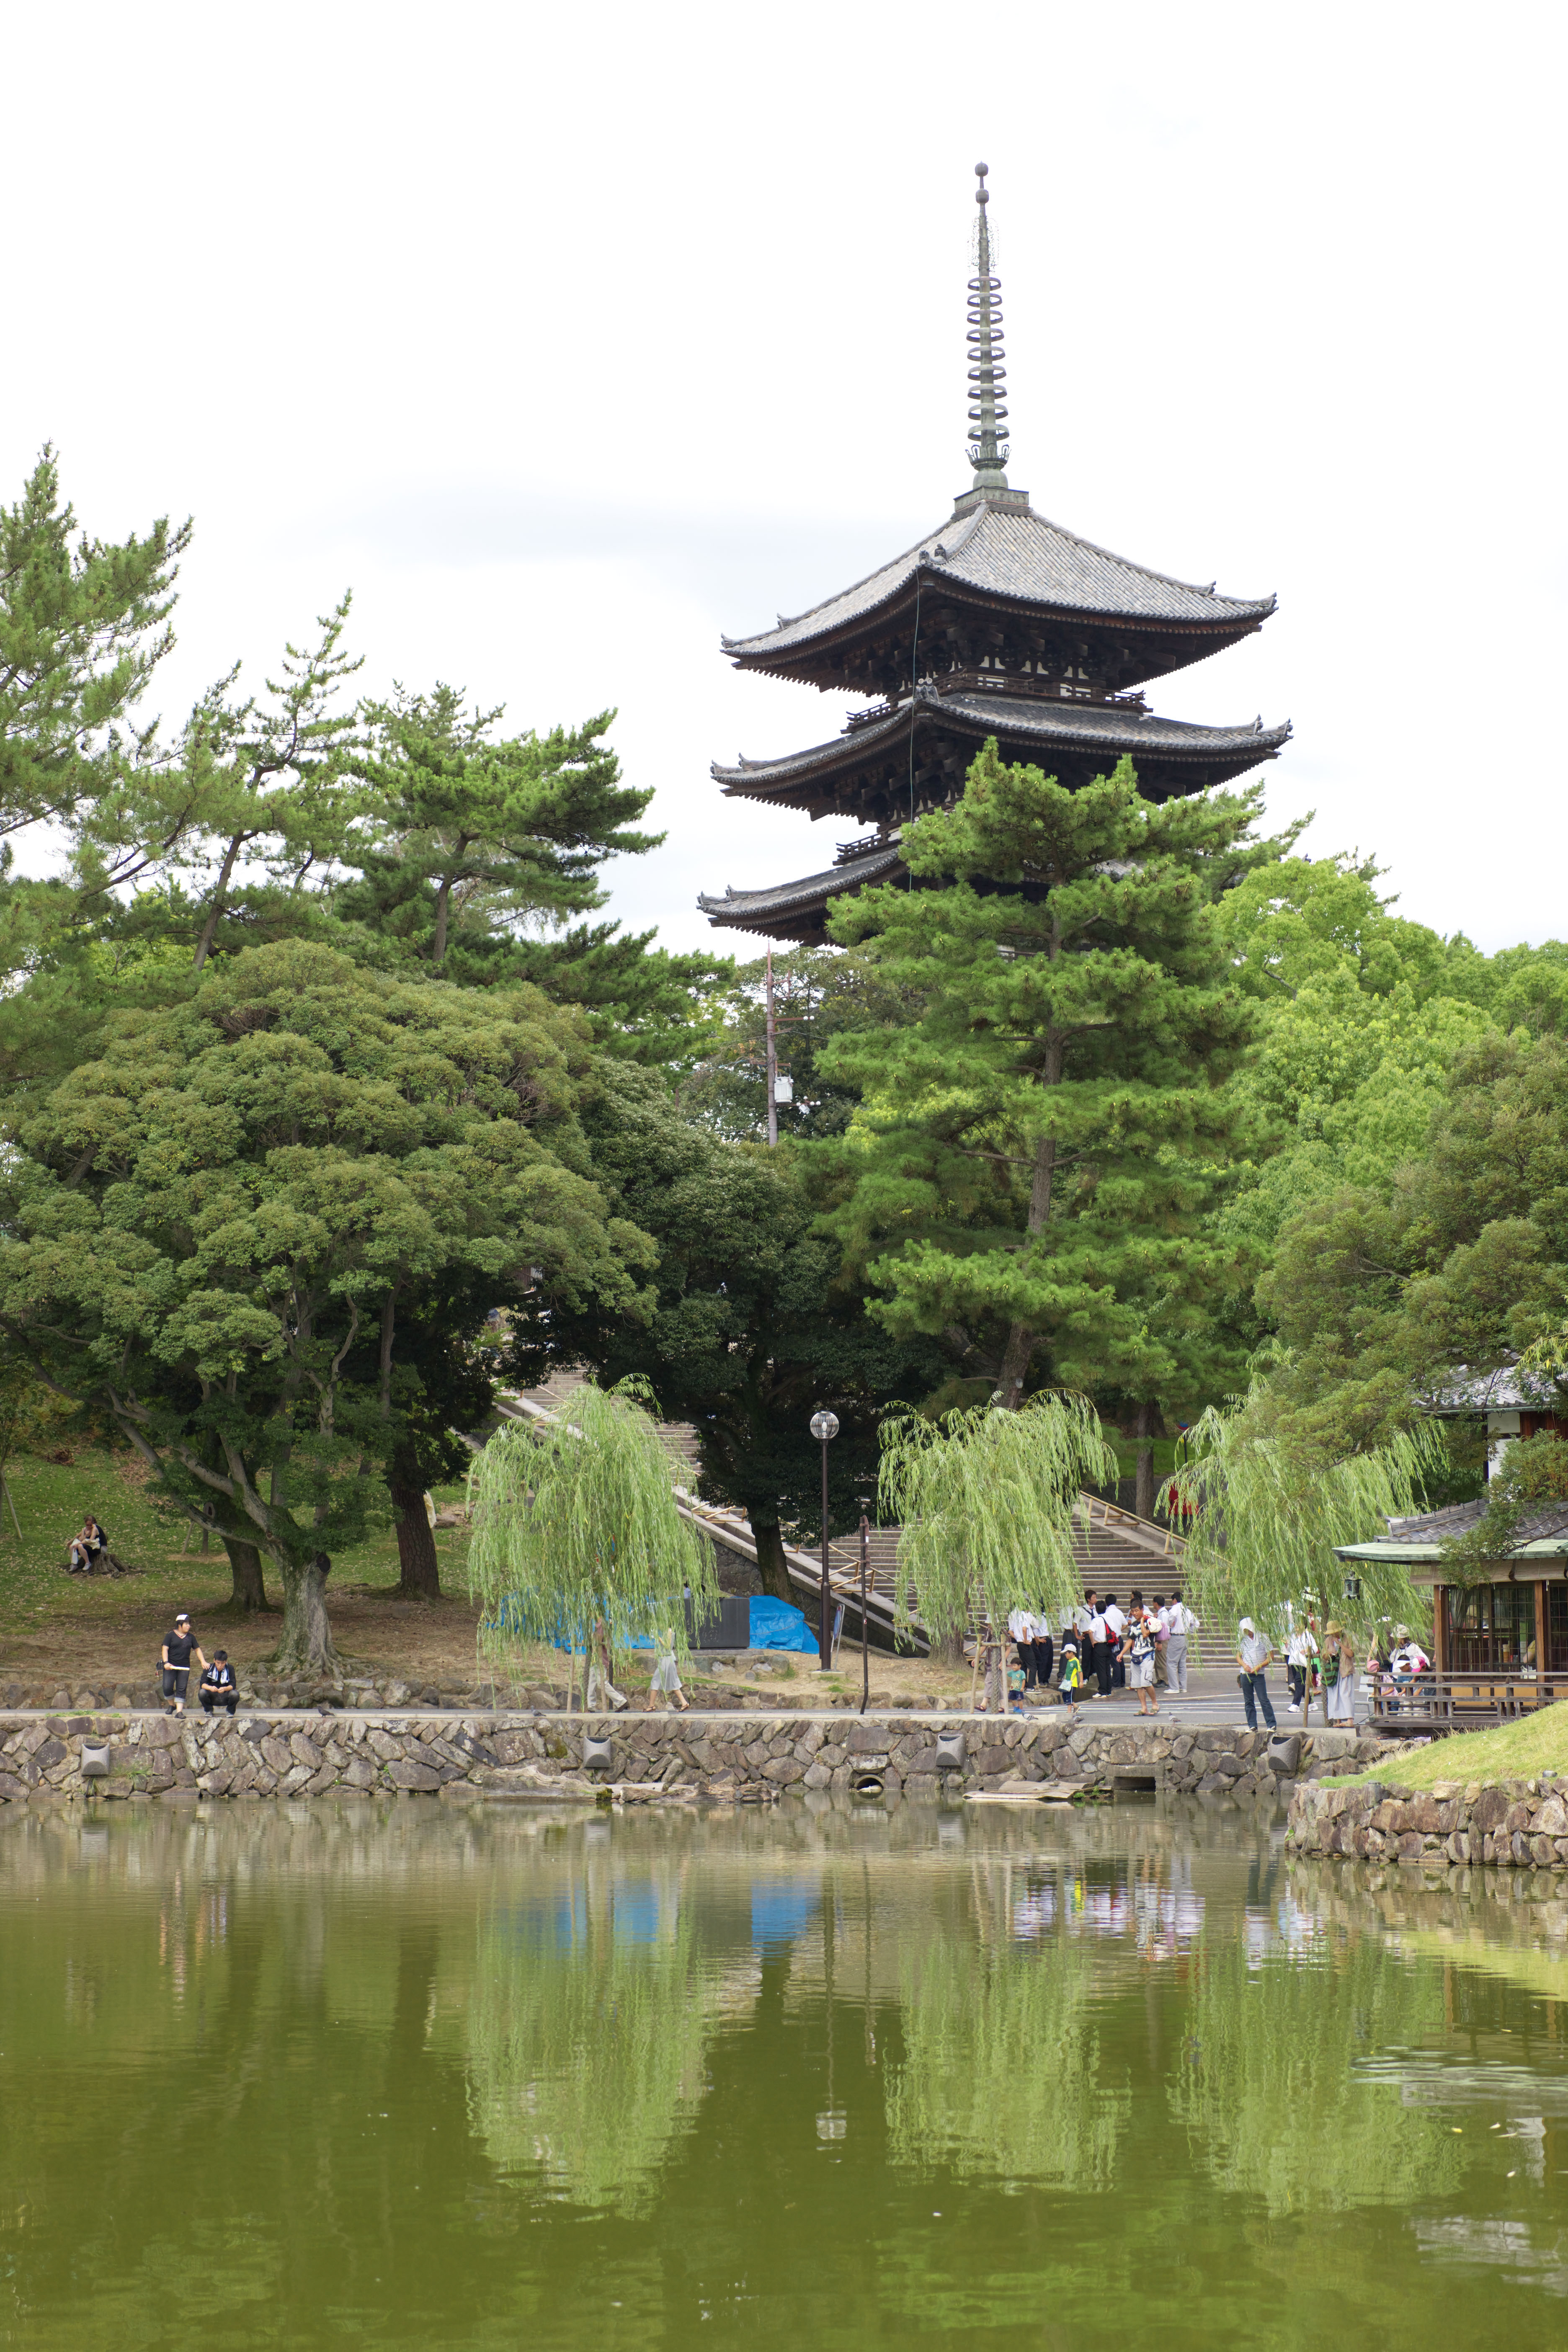 fotografia, material, livra, ajardine, imagine, proveja fotografia,Uma lagoa de Sarusawa, salgueiro, lagoa, Nara-koen estacionam, atrao turstica